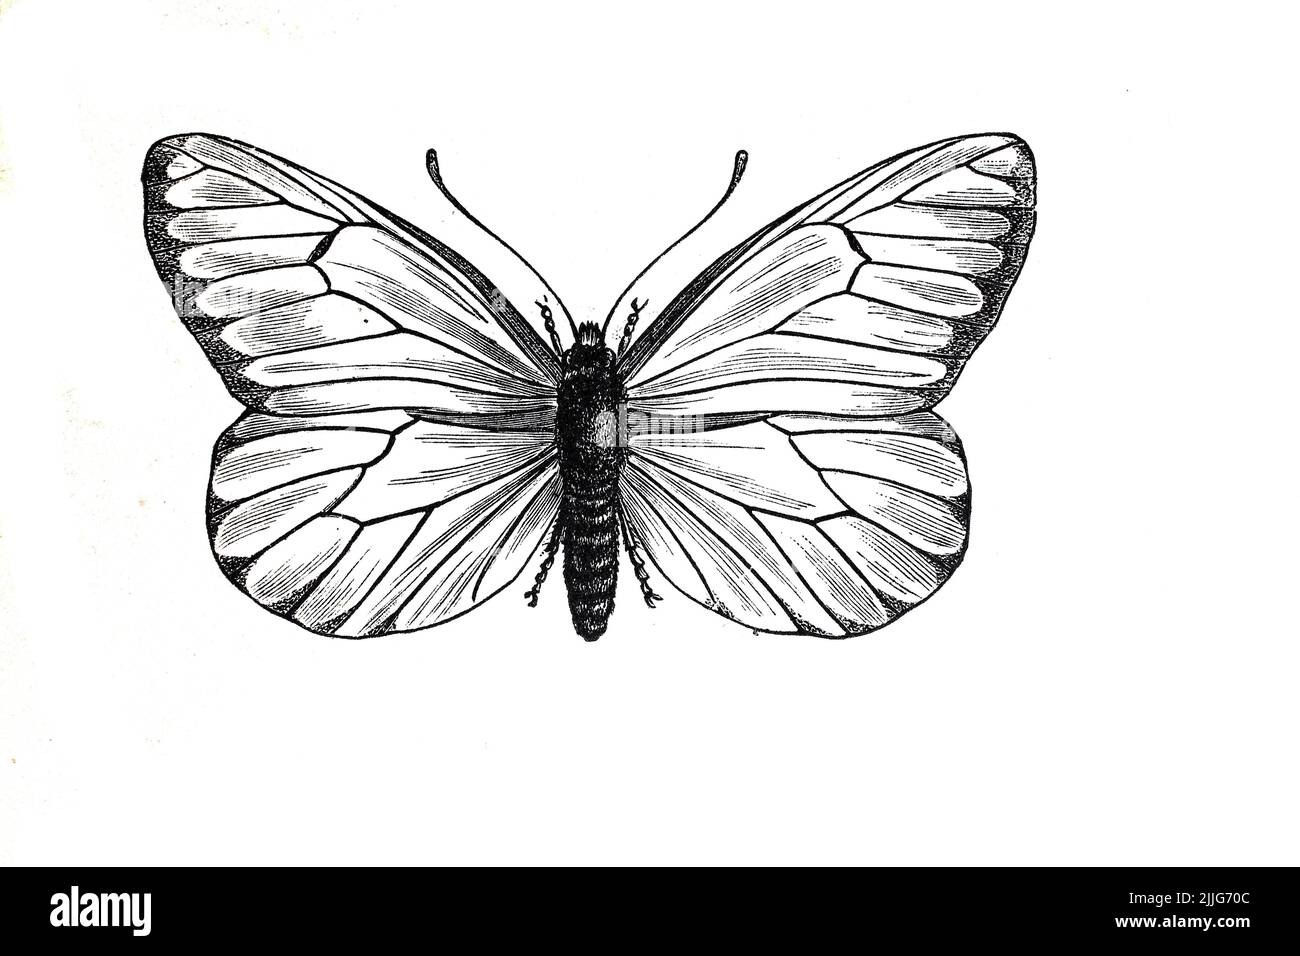 Baumweißling, Baum-Weißling, Aporia crataegi ist ein Schmetterling, Tagfalter, aus der Familie der Weißlinge / Tree white Butterfly, Tree white Butterfly, Aporia crataegi ist ein Schmetterling, Schmetterling, aus der Familie der weißen Schmetterlinge, Historisch, Historisch, Historisch, Digital verbesserte Reproduktion eines Originals aus dem 19.. Jahrhundert / digital restaurierte Reproduktion einer Originalvorlage aus dem 19. Jahrhundert, das Originaldatum nicht bekannt, Stockfoto